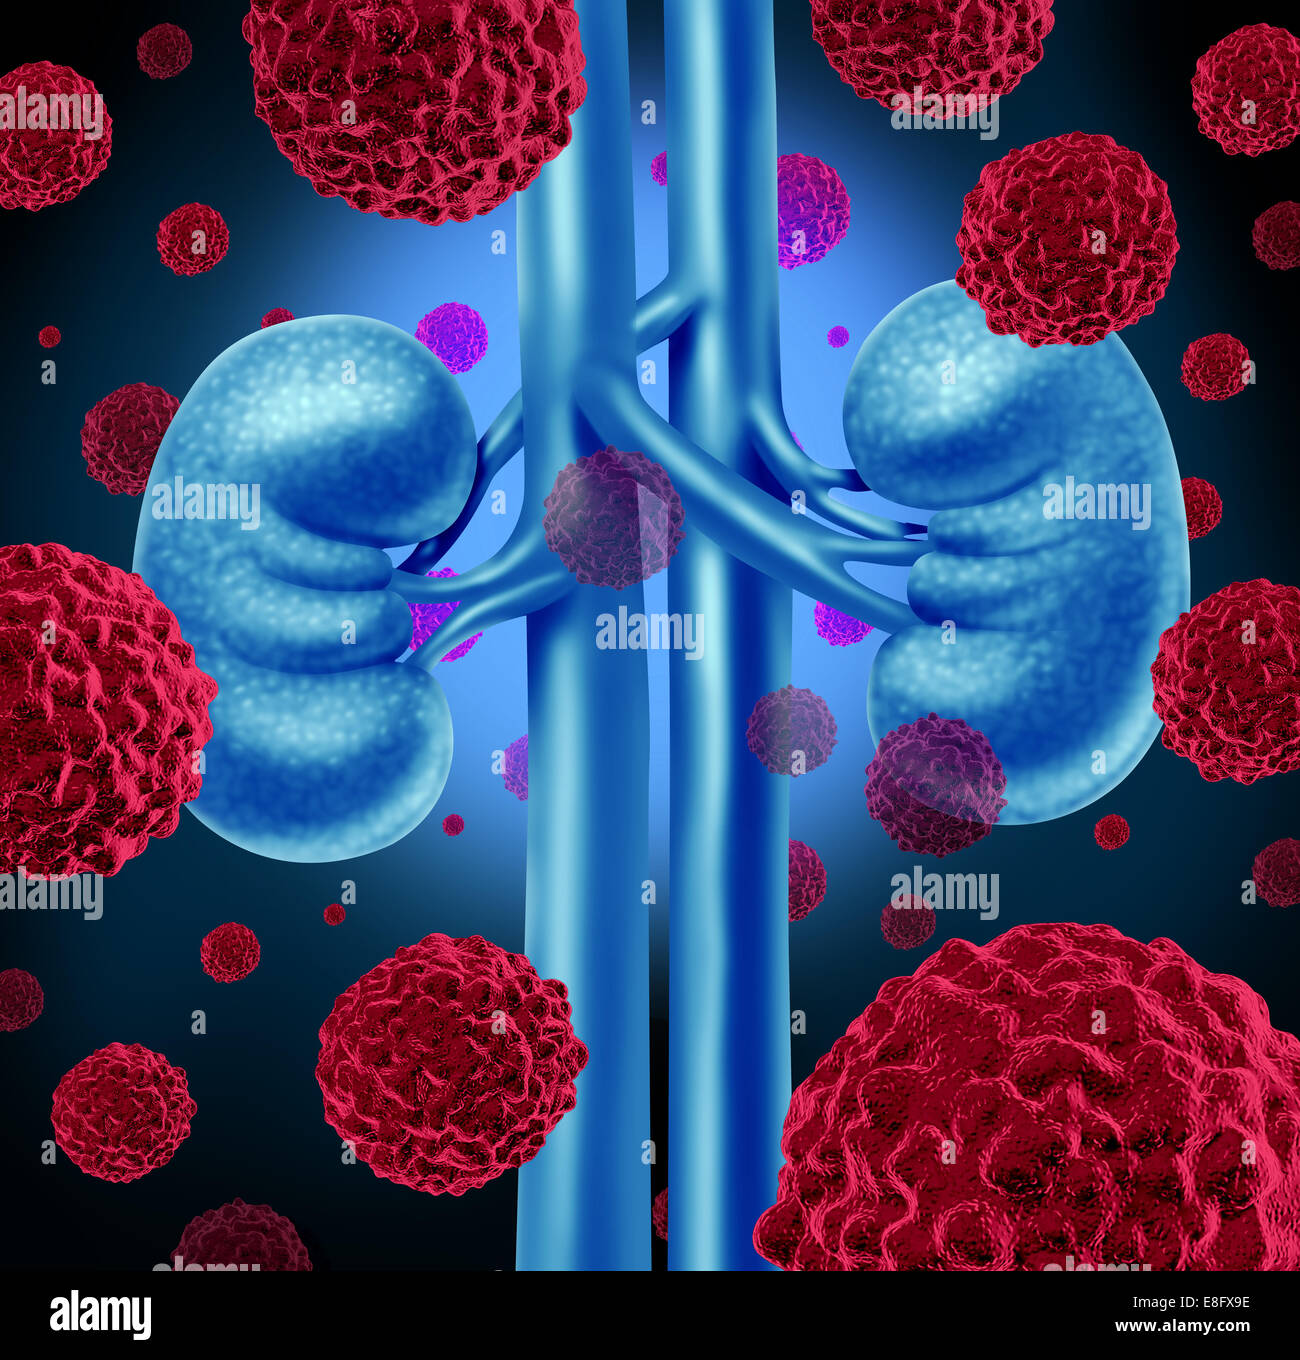 Il cancro del rene concetto medico come le cellule cancerose in un corpo umano che attacca il sistema urinario e anatomia renale come un simbolo per Foto Stock